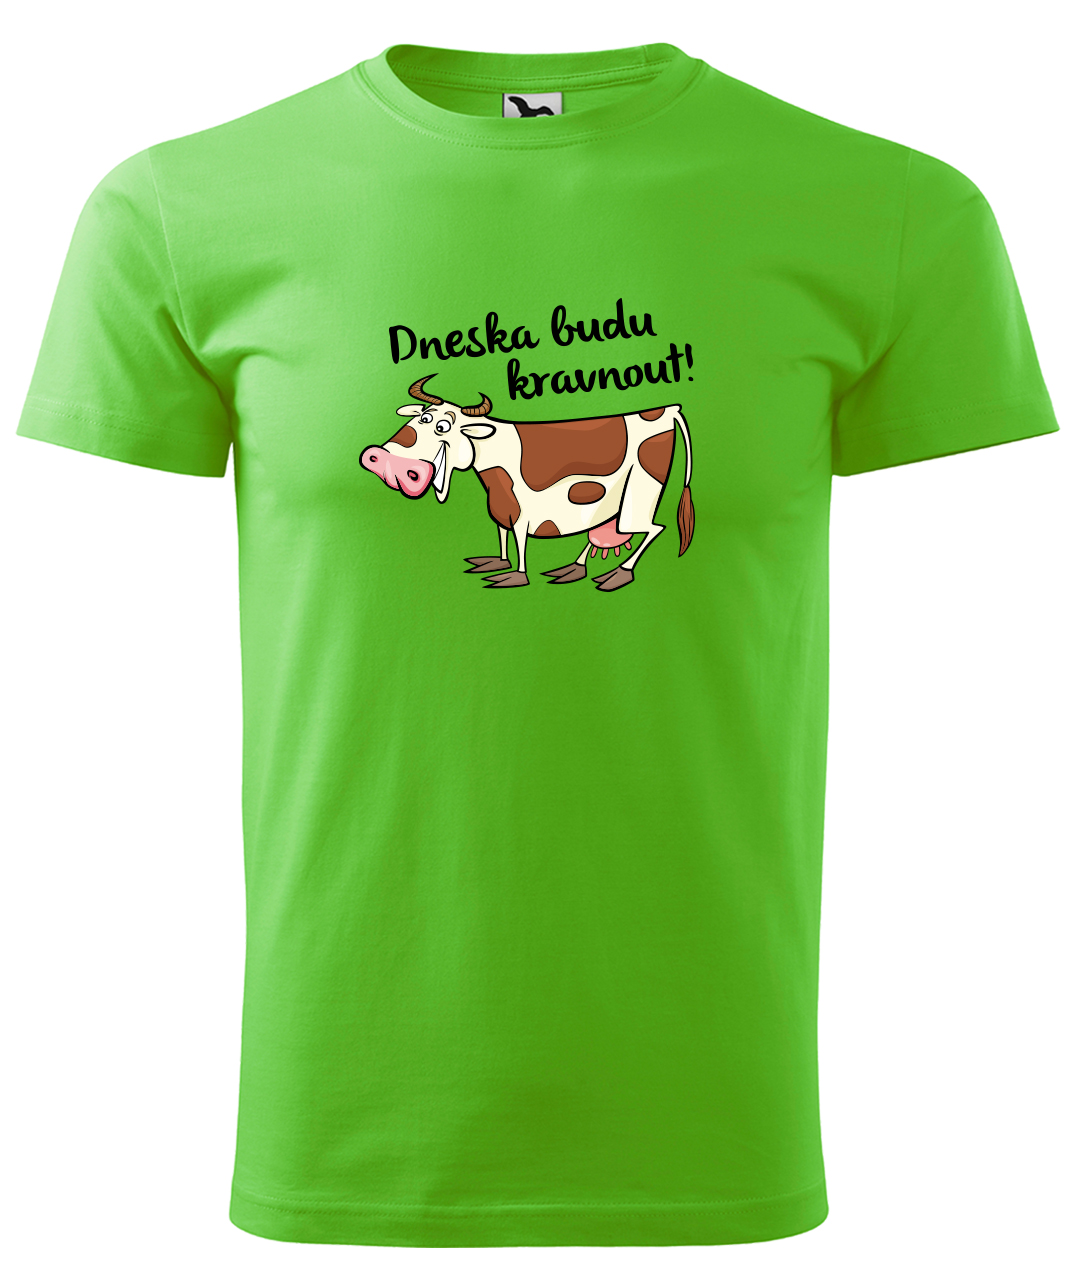 Dětské tričko s krávou - Dneska budu kravnout! Velikost: 4 roky / 110 cm, Barva: Apple Green (92), Délka rukávu: Krátký rukáv